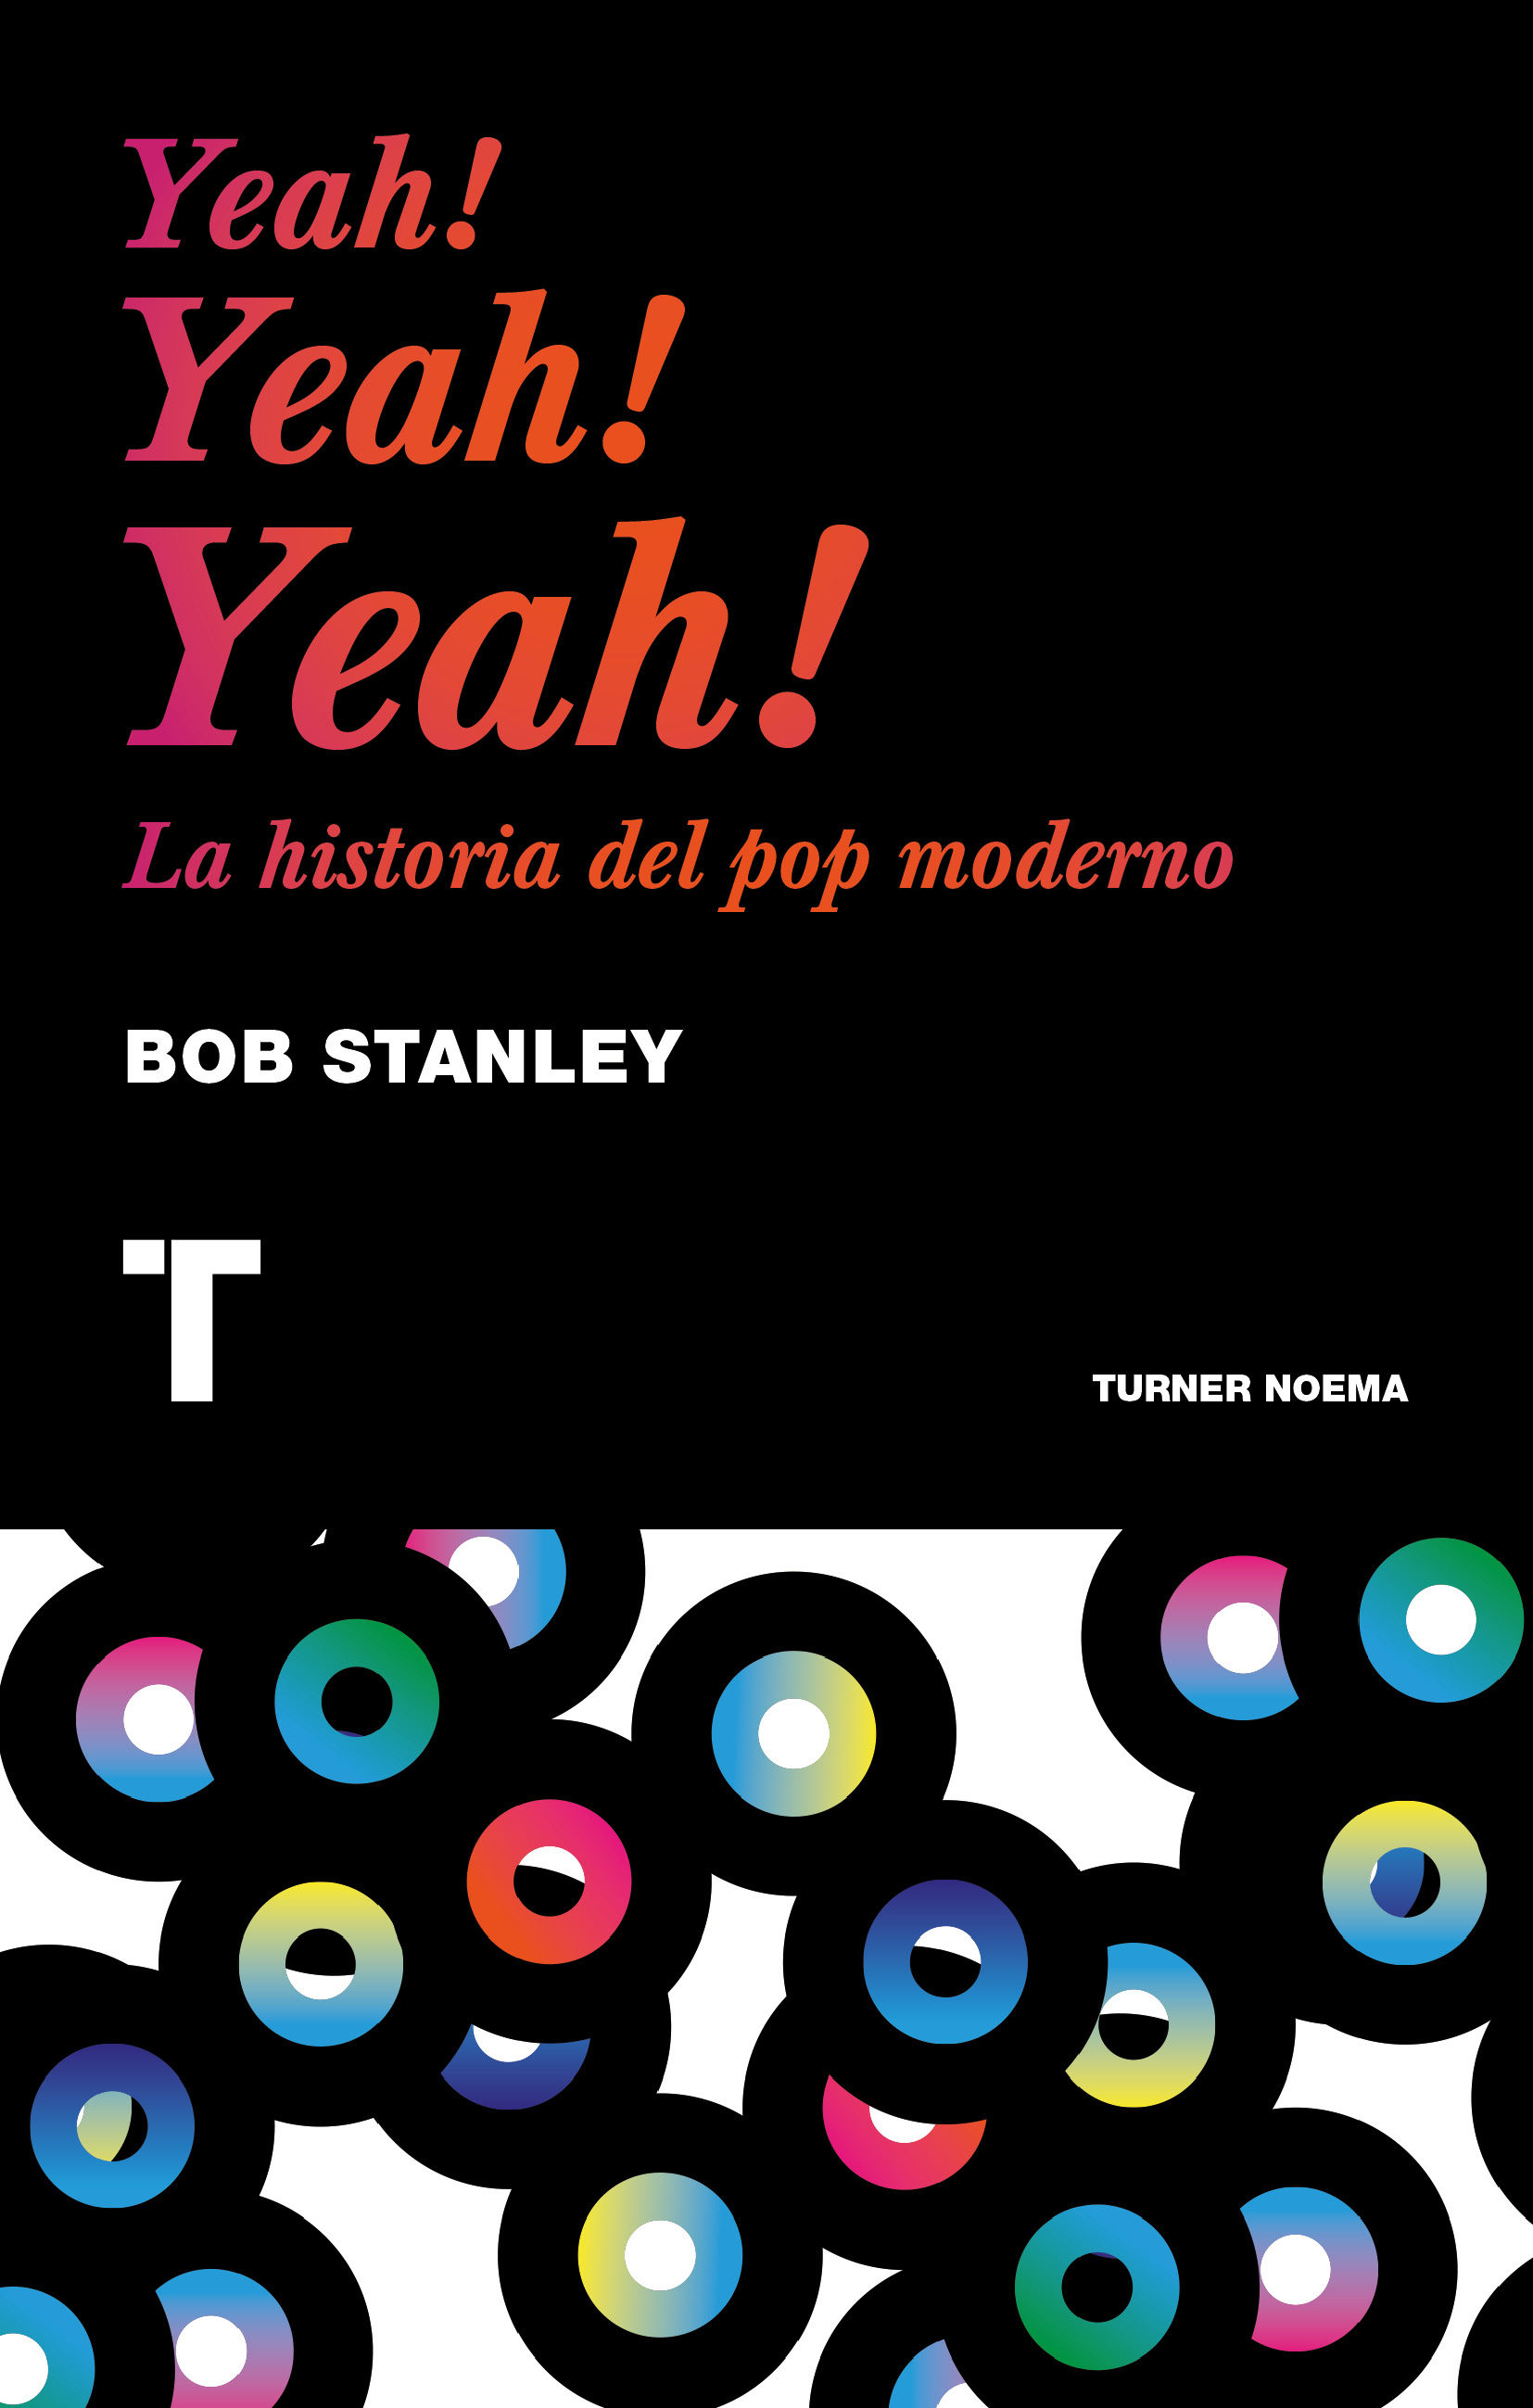 Resultado de imagen para Yeah! Yeah! Yeah! La historia del pop moderno Bob Stanley